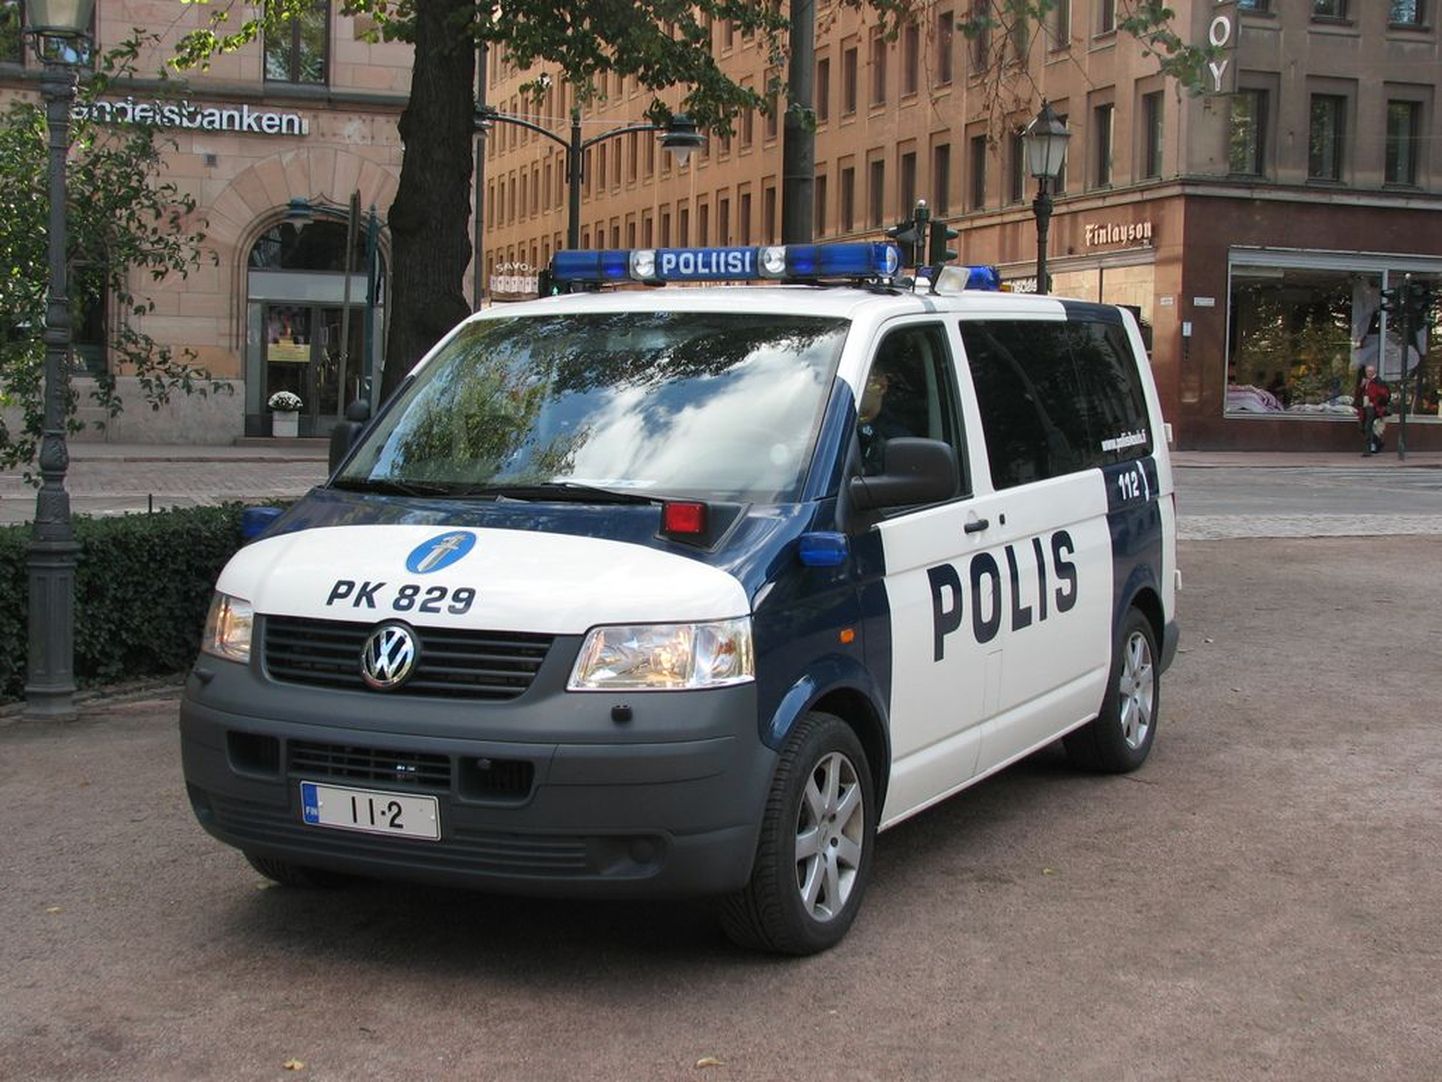 Soome politsei auto.